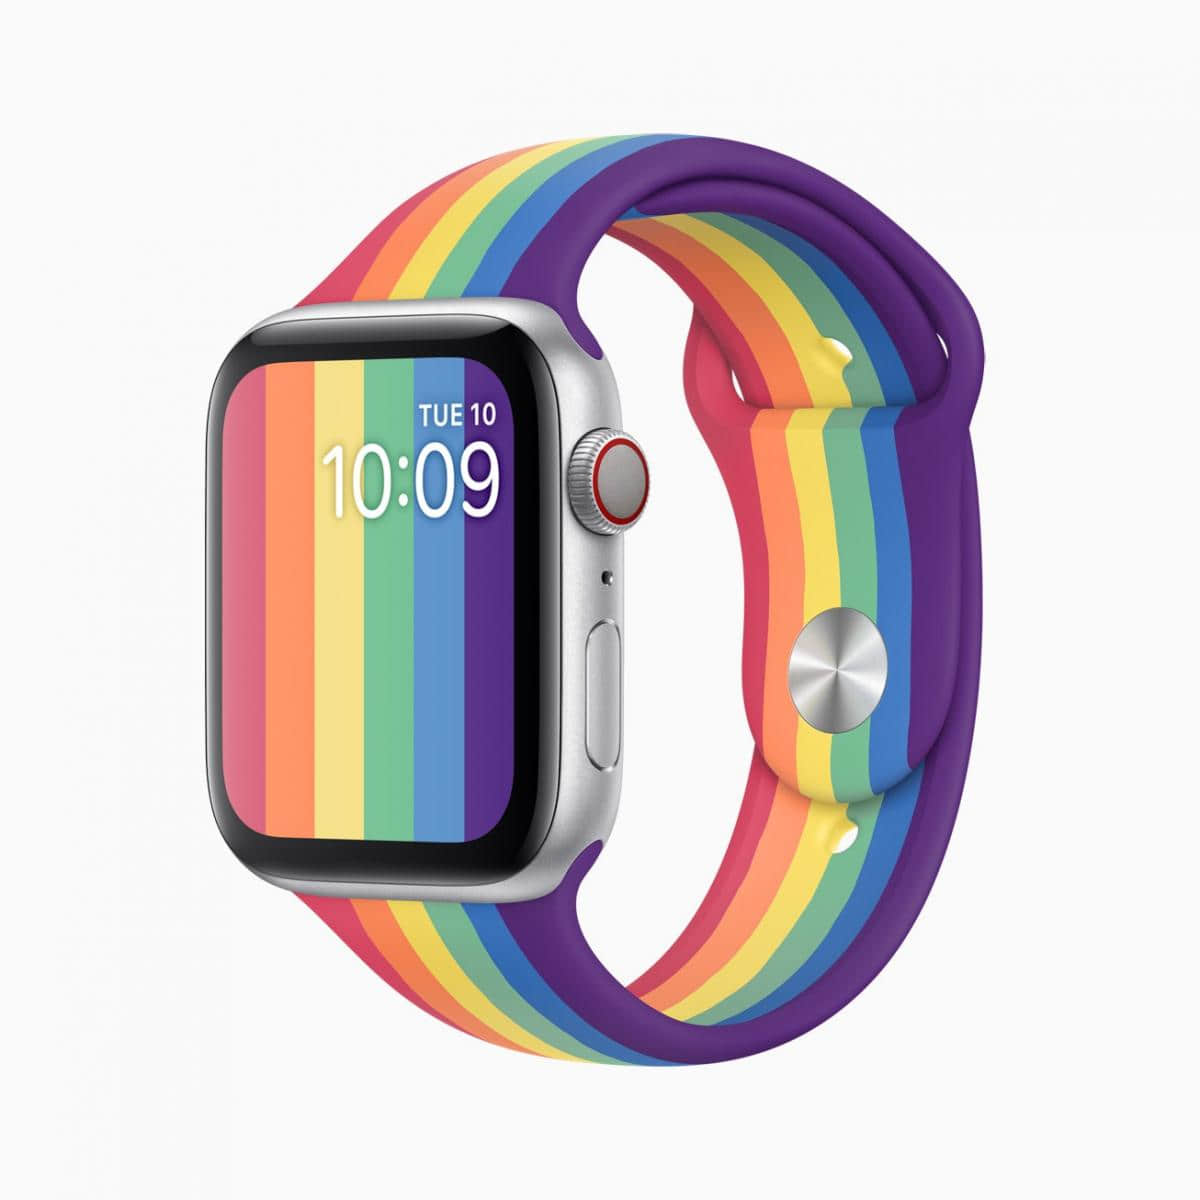 同志骄傲月苹果推Apple Watch彩虹表带 还可搭配美丽彩虹表面！ -2